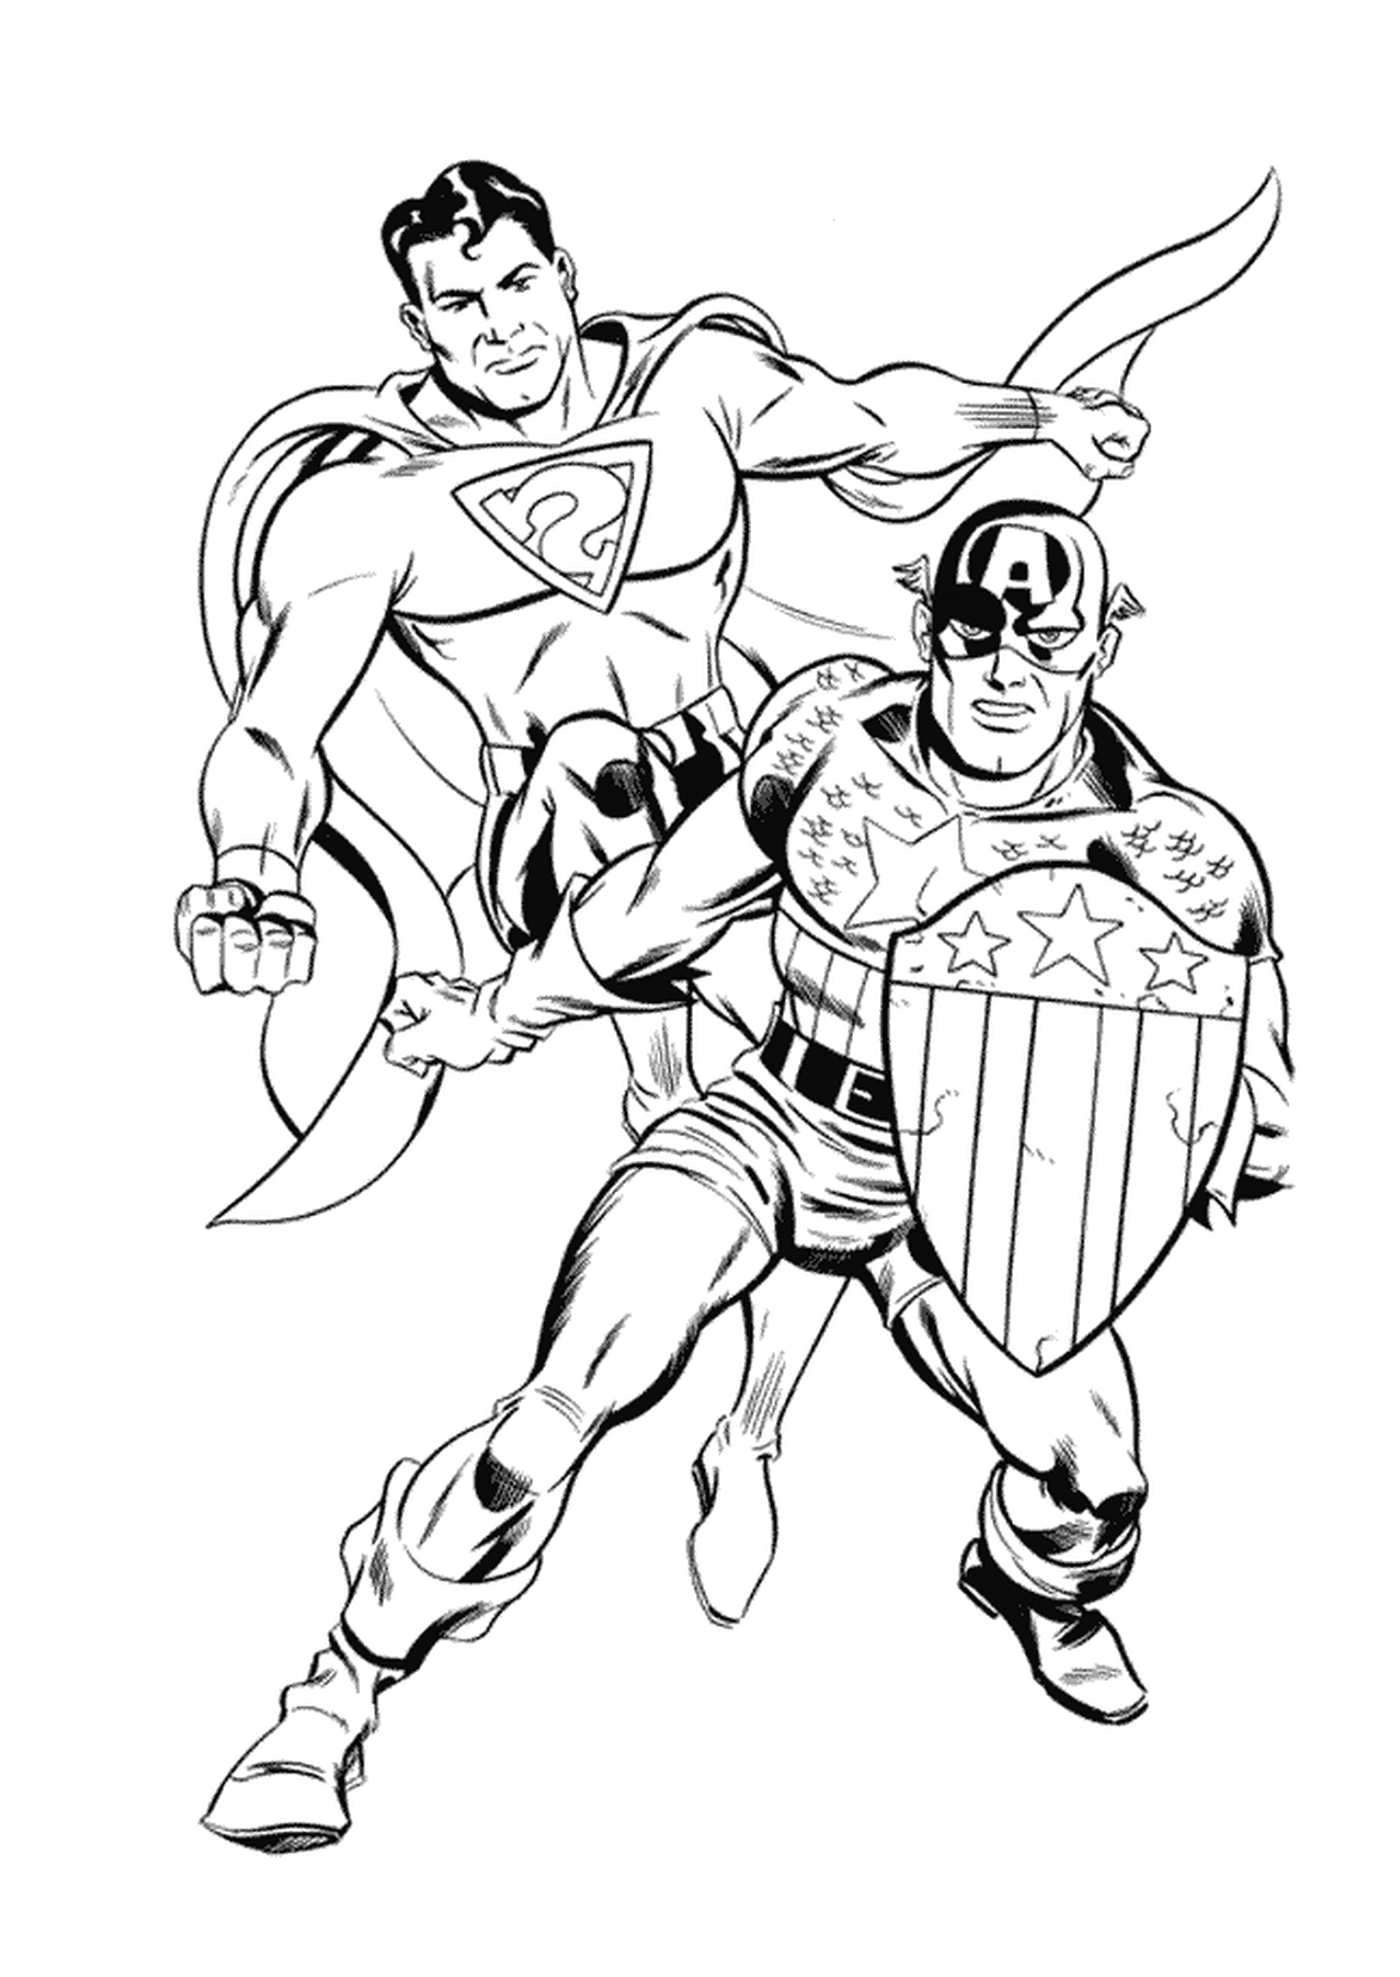  Imagen de dos superhéroes, Capitán América para colorear 35 